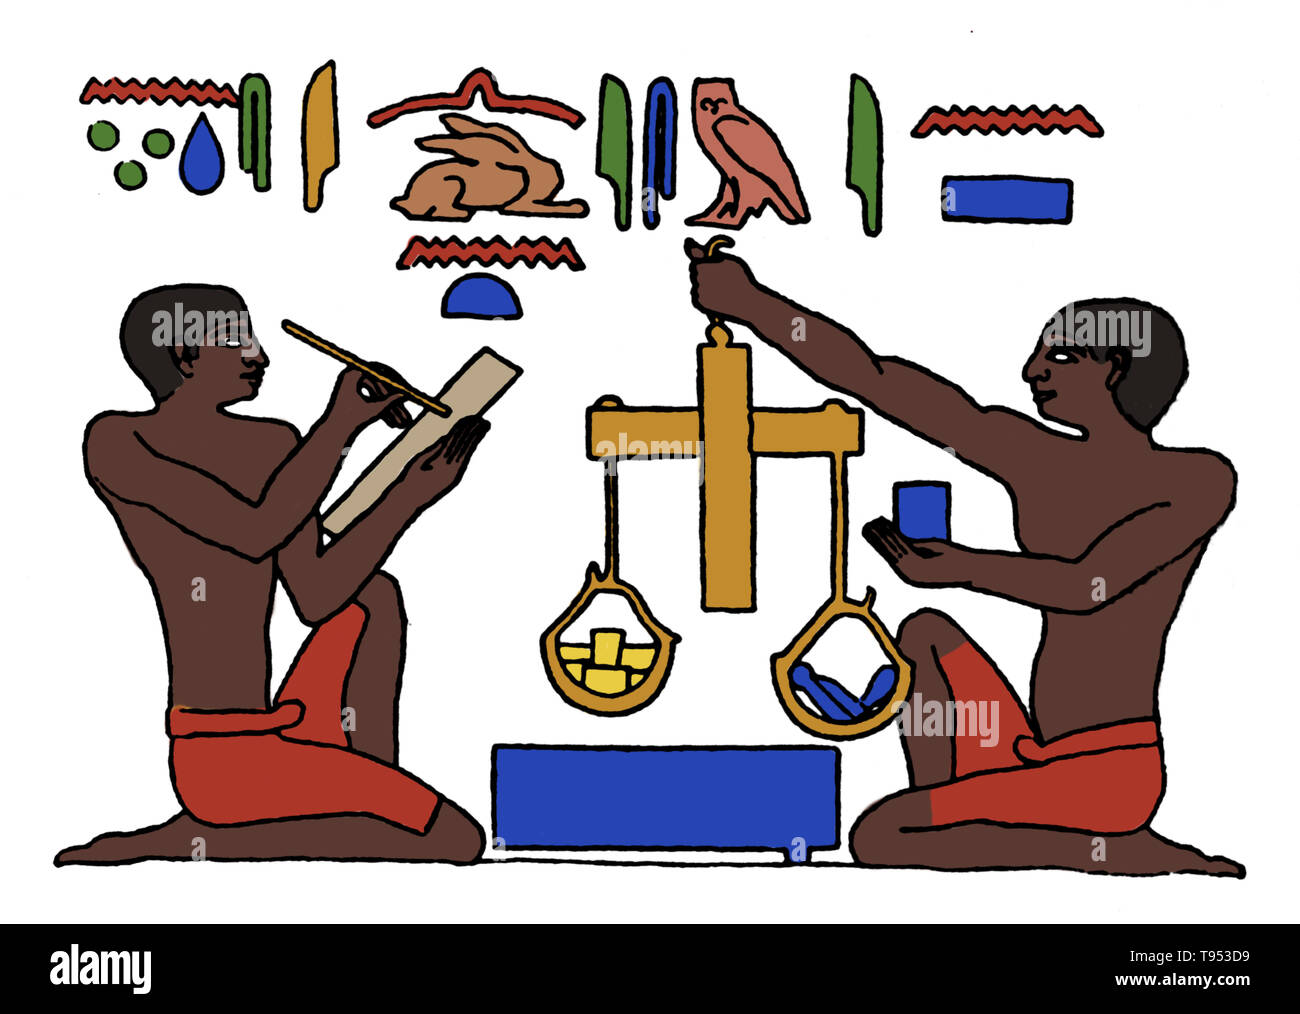 Los pesos y medidas, fueron los primeros instrumentos inventados por el  hombre. Primeros registros egipcios y babilonios, y la Biblia, indican que  la longitud se midió por primera vez con el antebrazo,